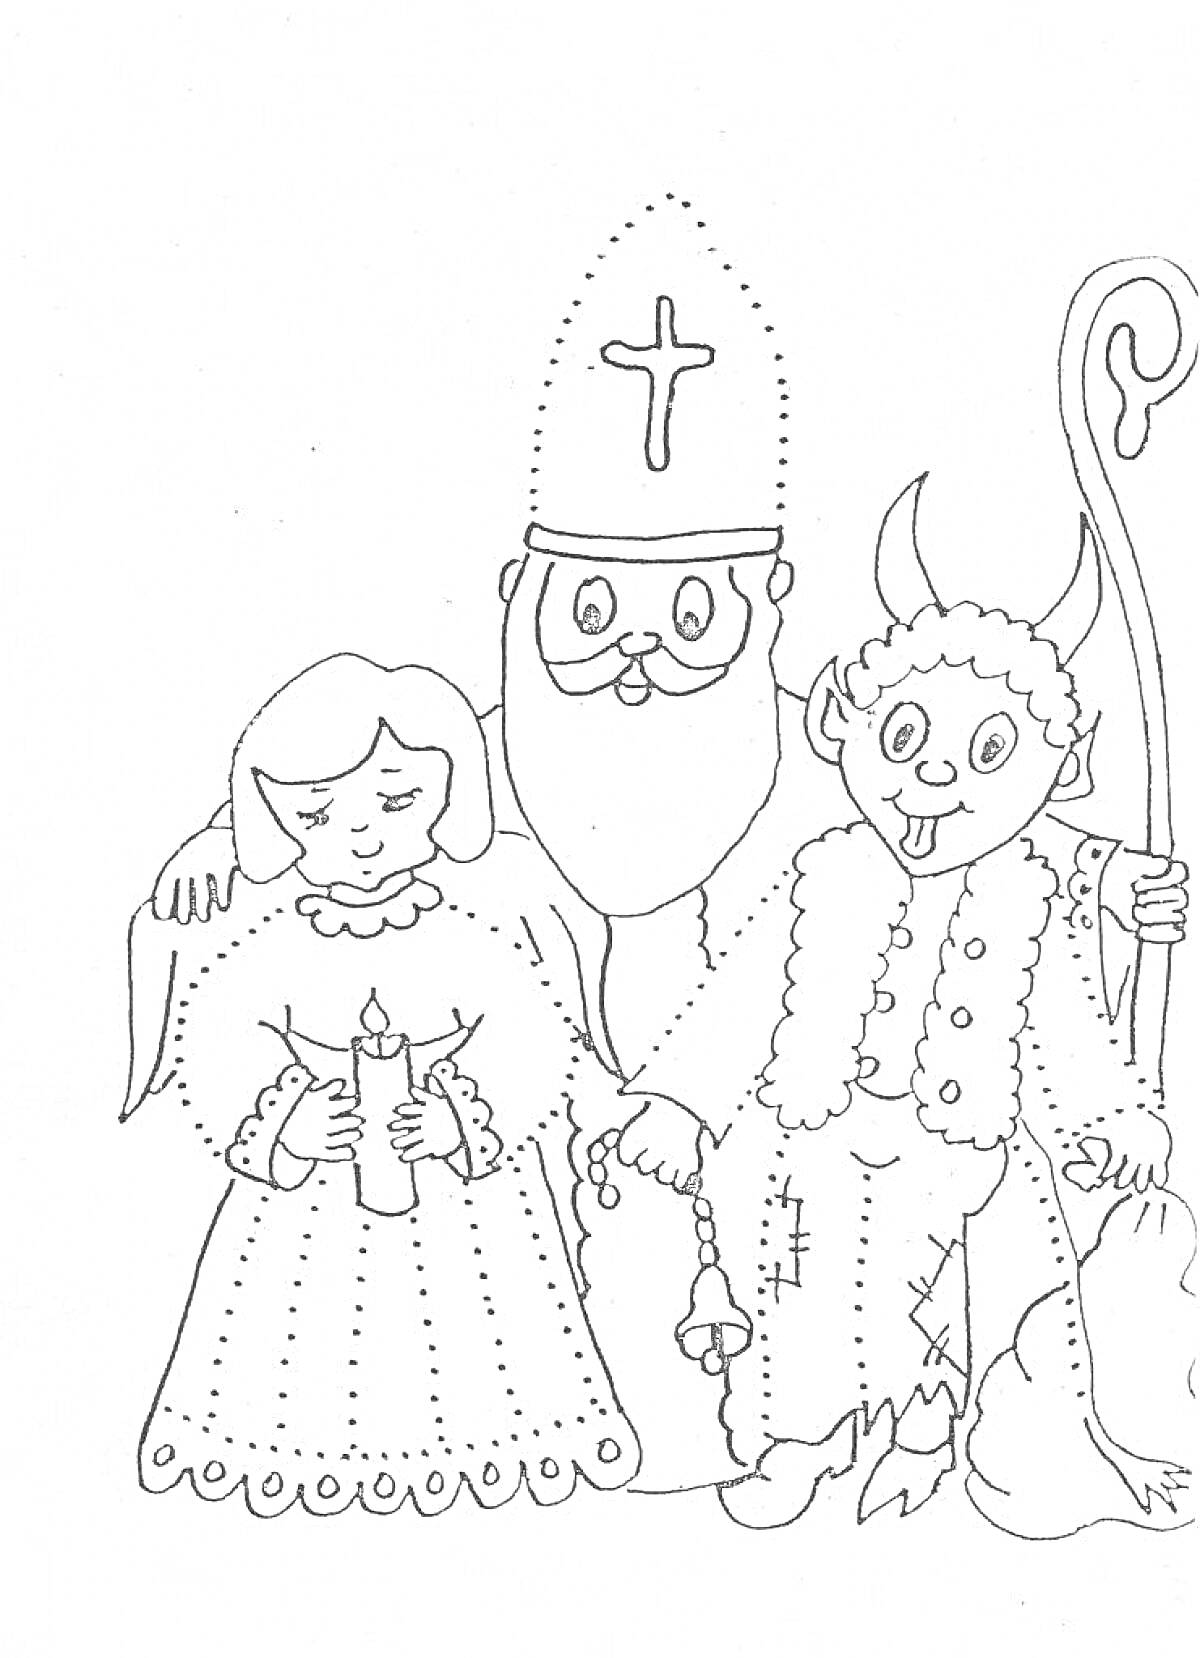 Раскраска Девочка с свечой, святой Николай с митрой и крестом, черт с рогами и посохом